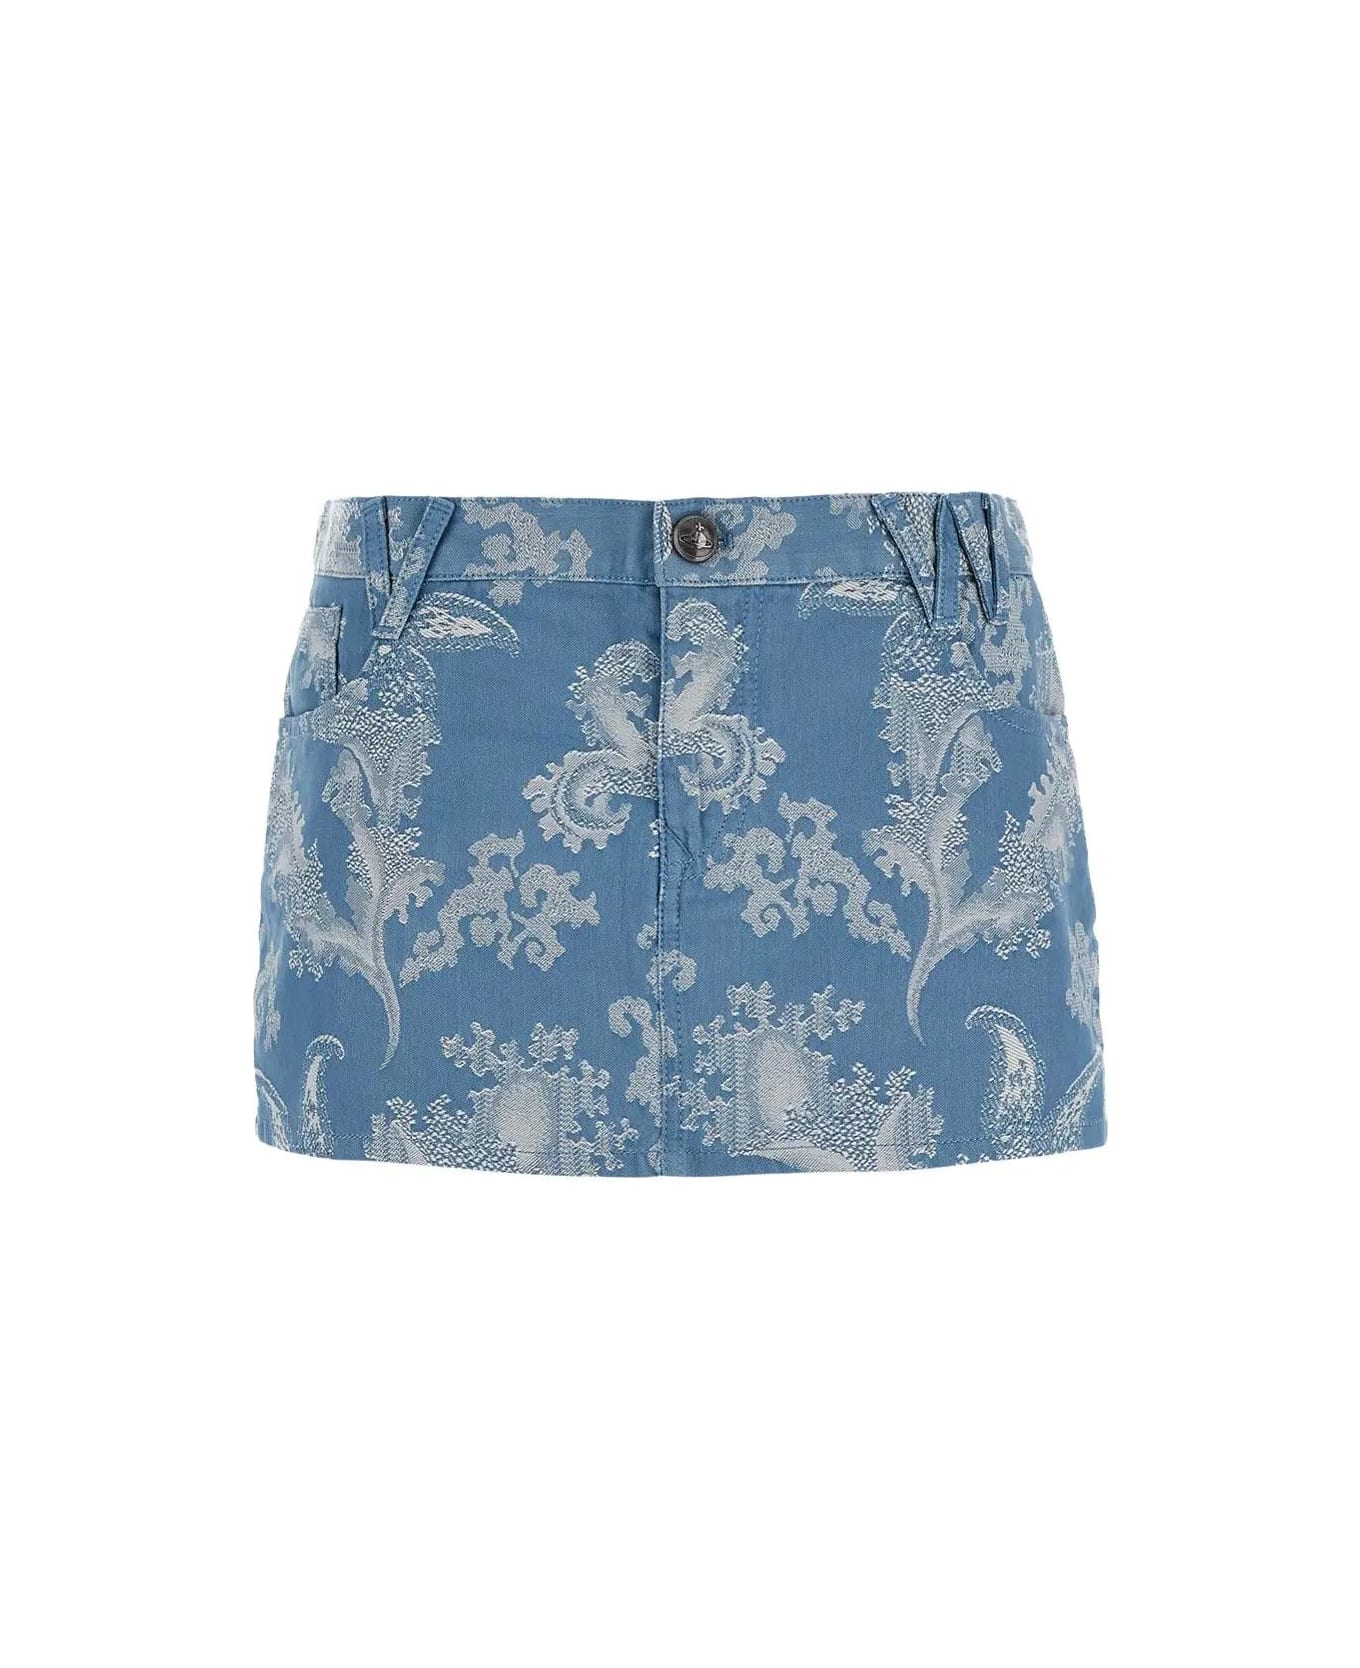 Vivienne Westwood Foam Skirt - Blue coral